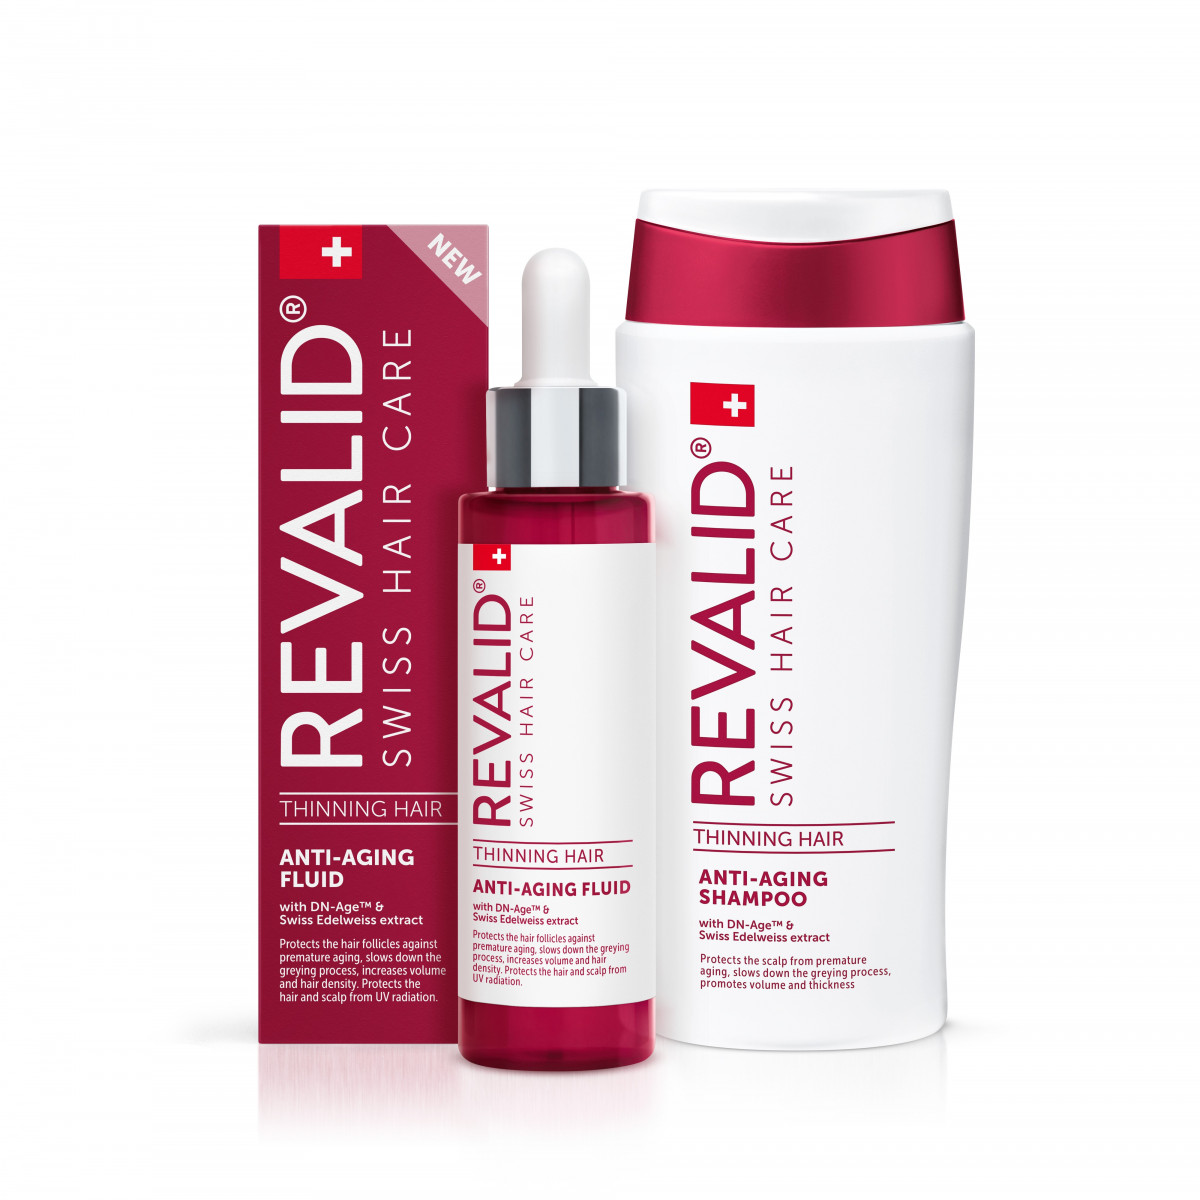 REVALID® își extinde gama cu noi produse pentru tratarea în profunzime a problemelor părului